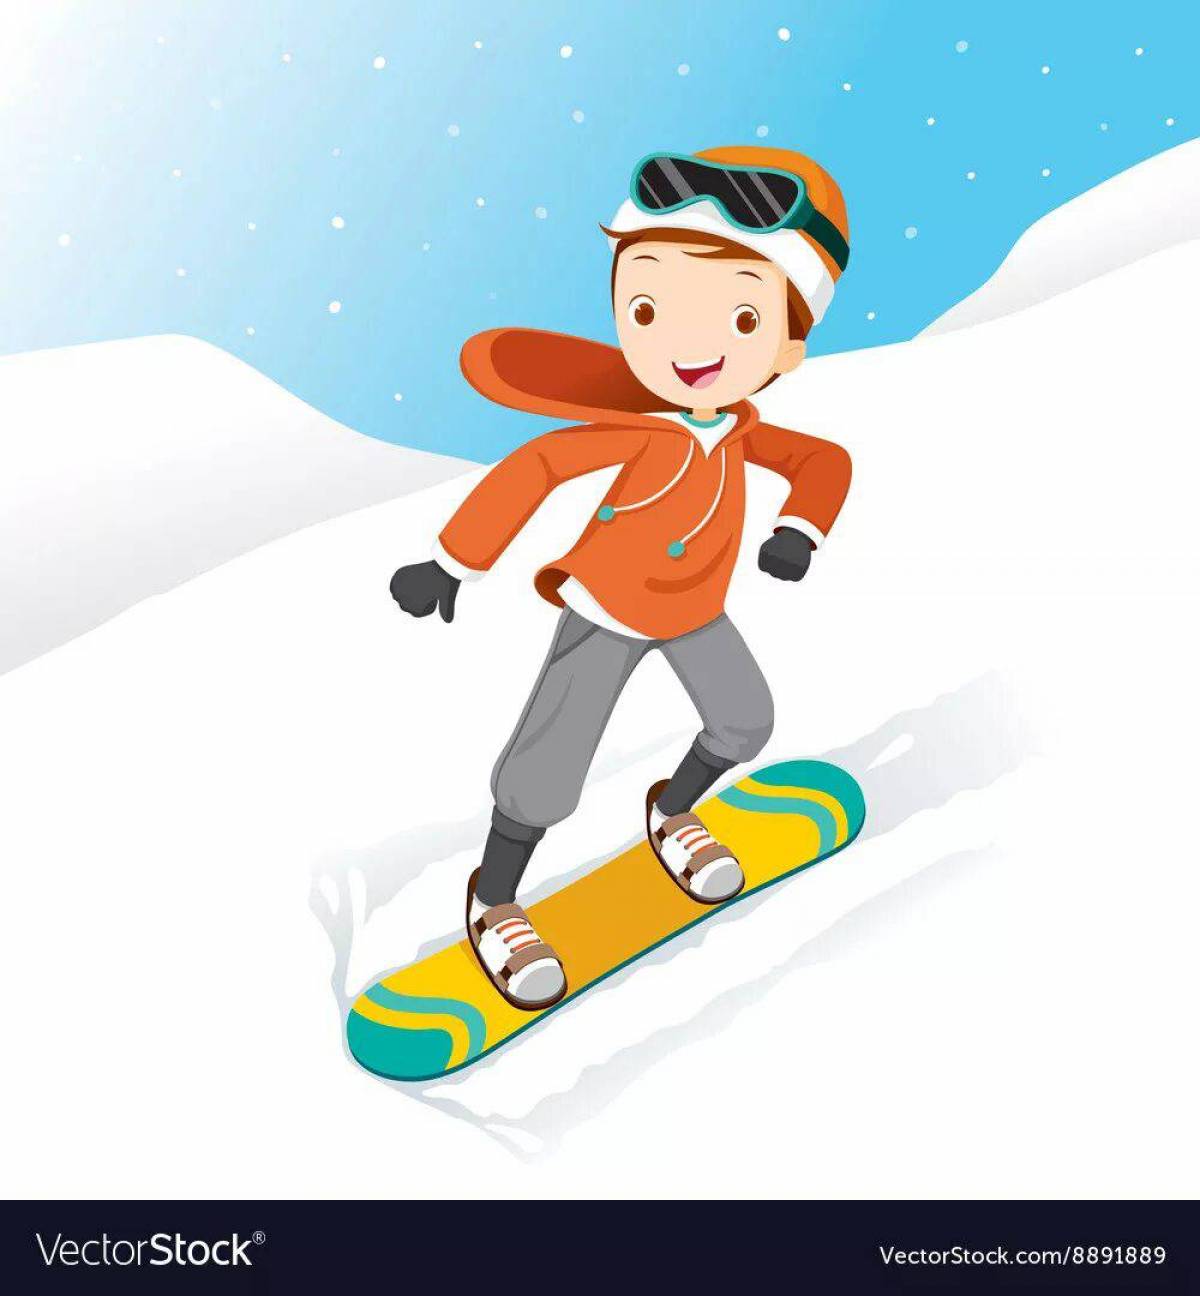 Сноубордист для детей #32